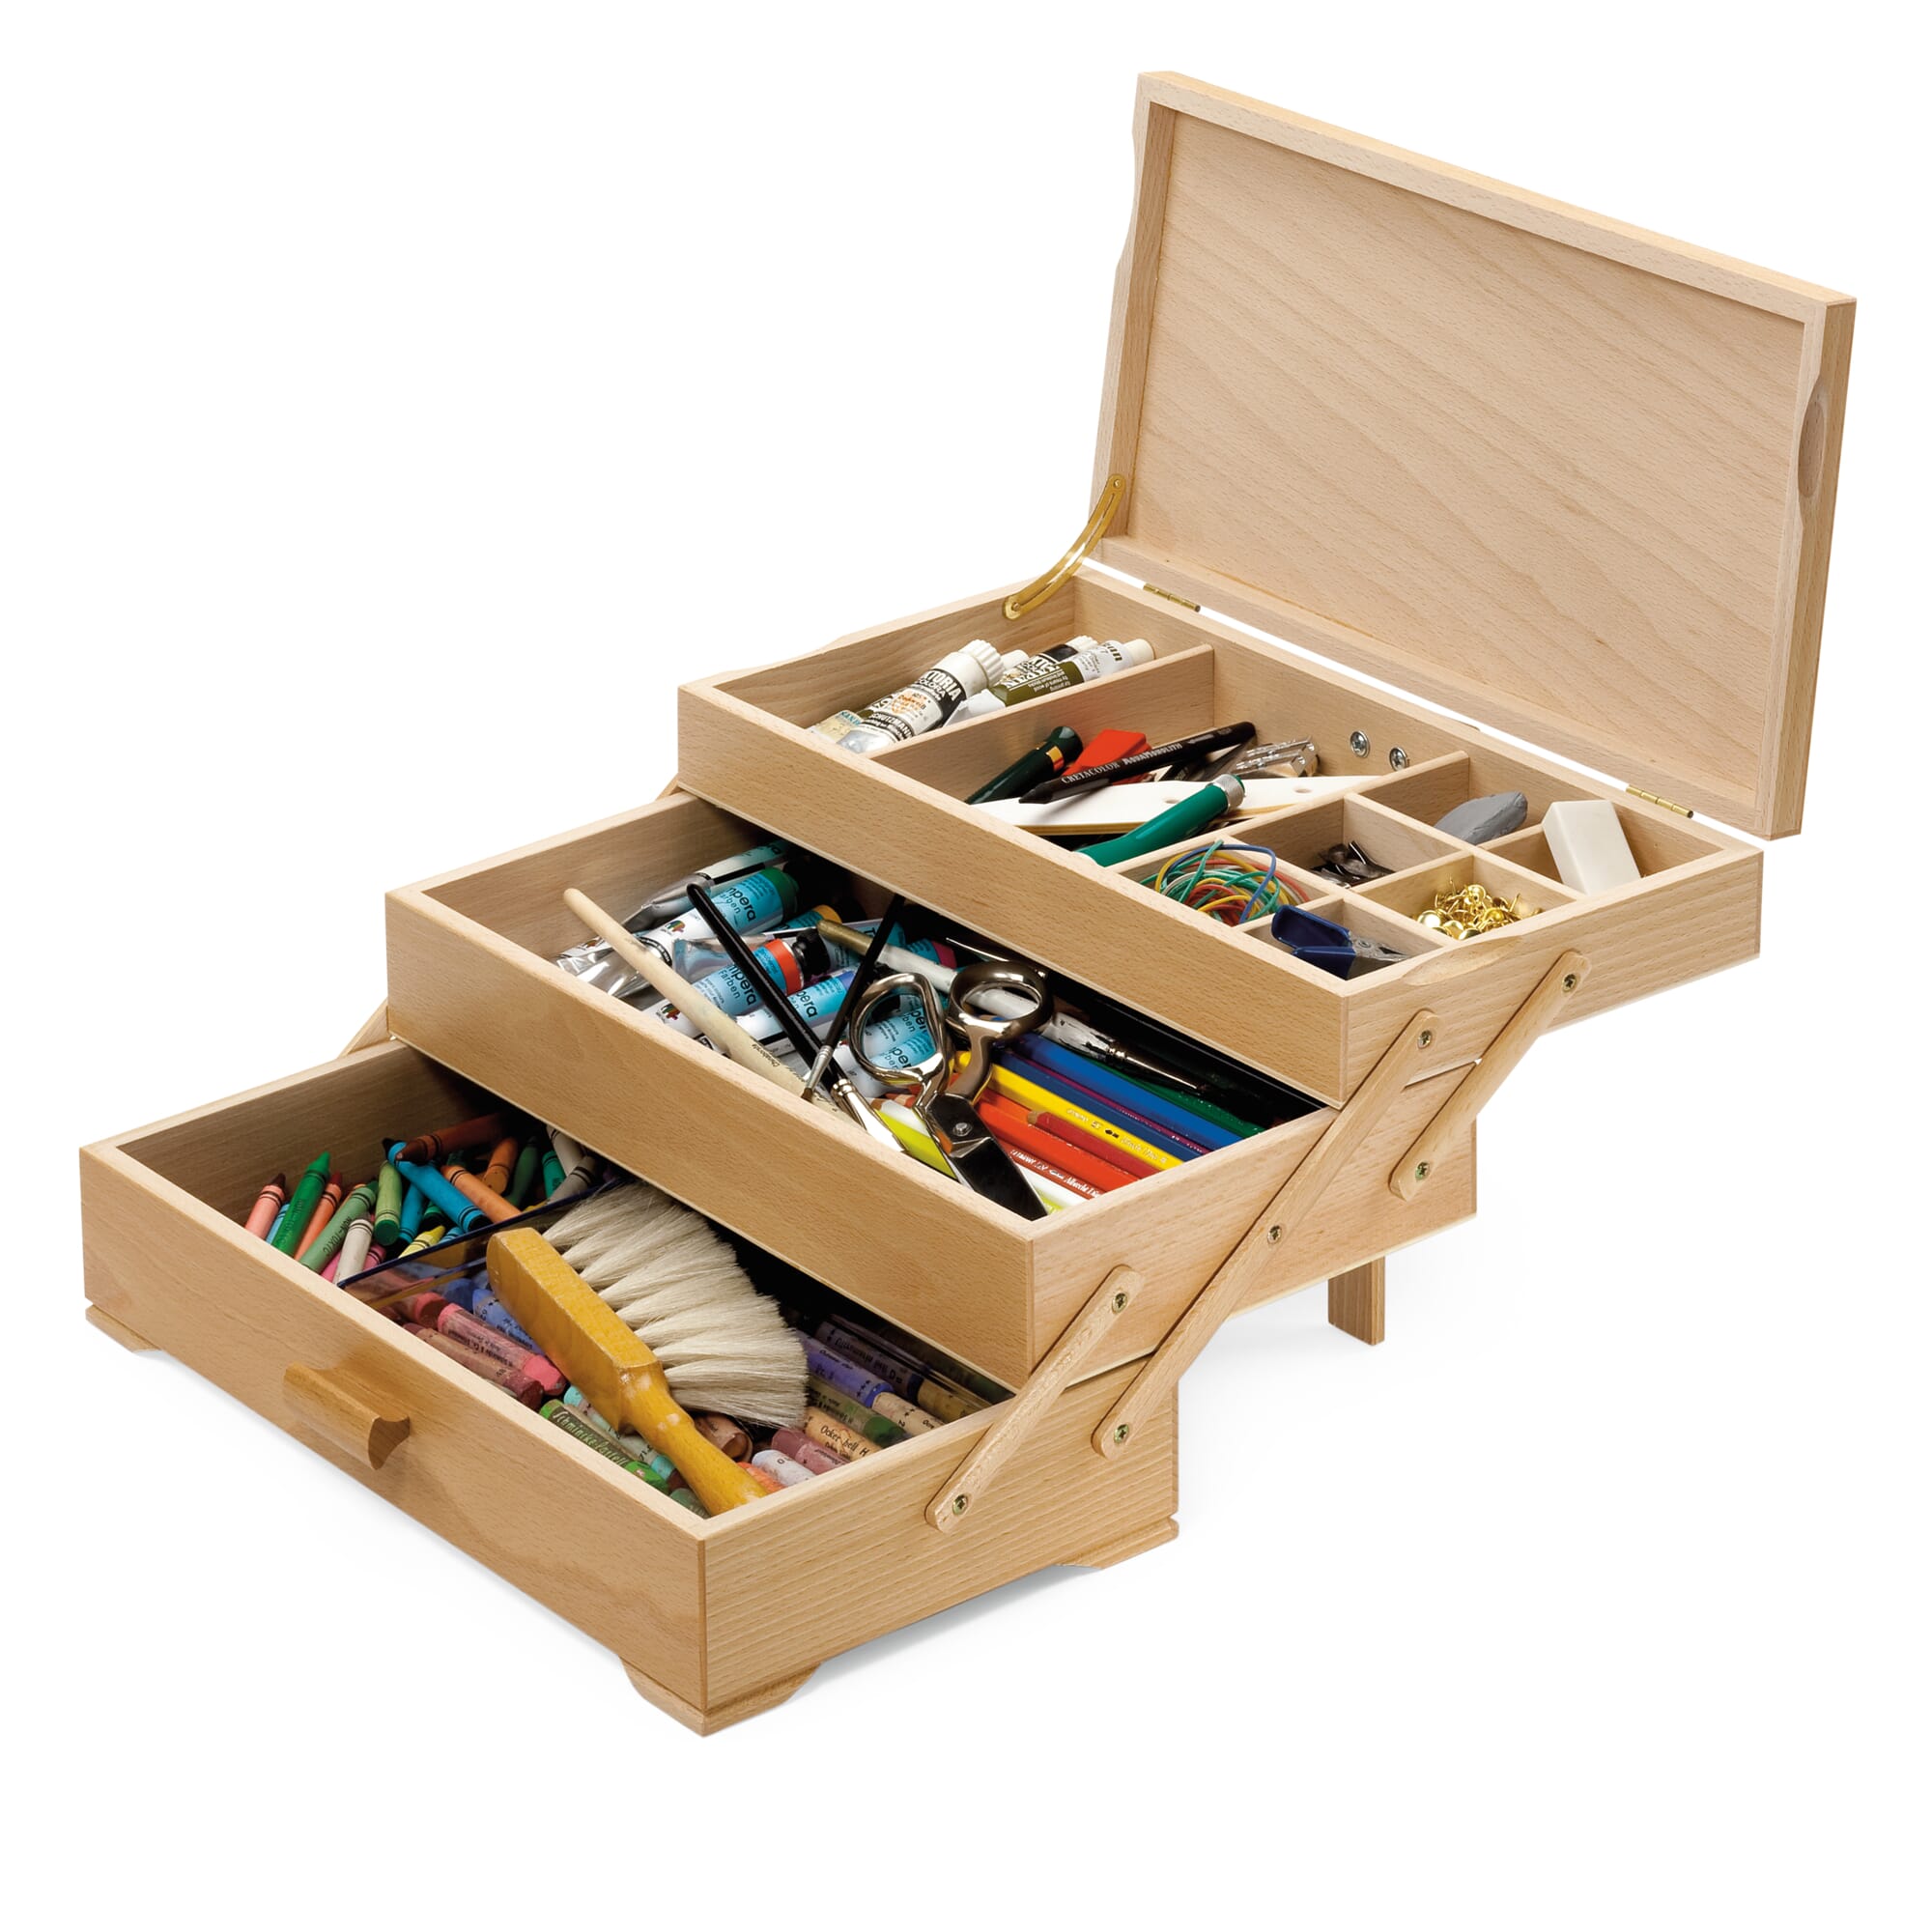 Best Deal for Wooden Sewing Kit Set - Wood Basket Storage